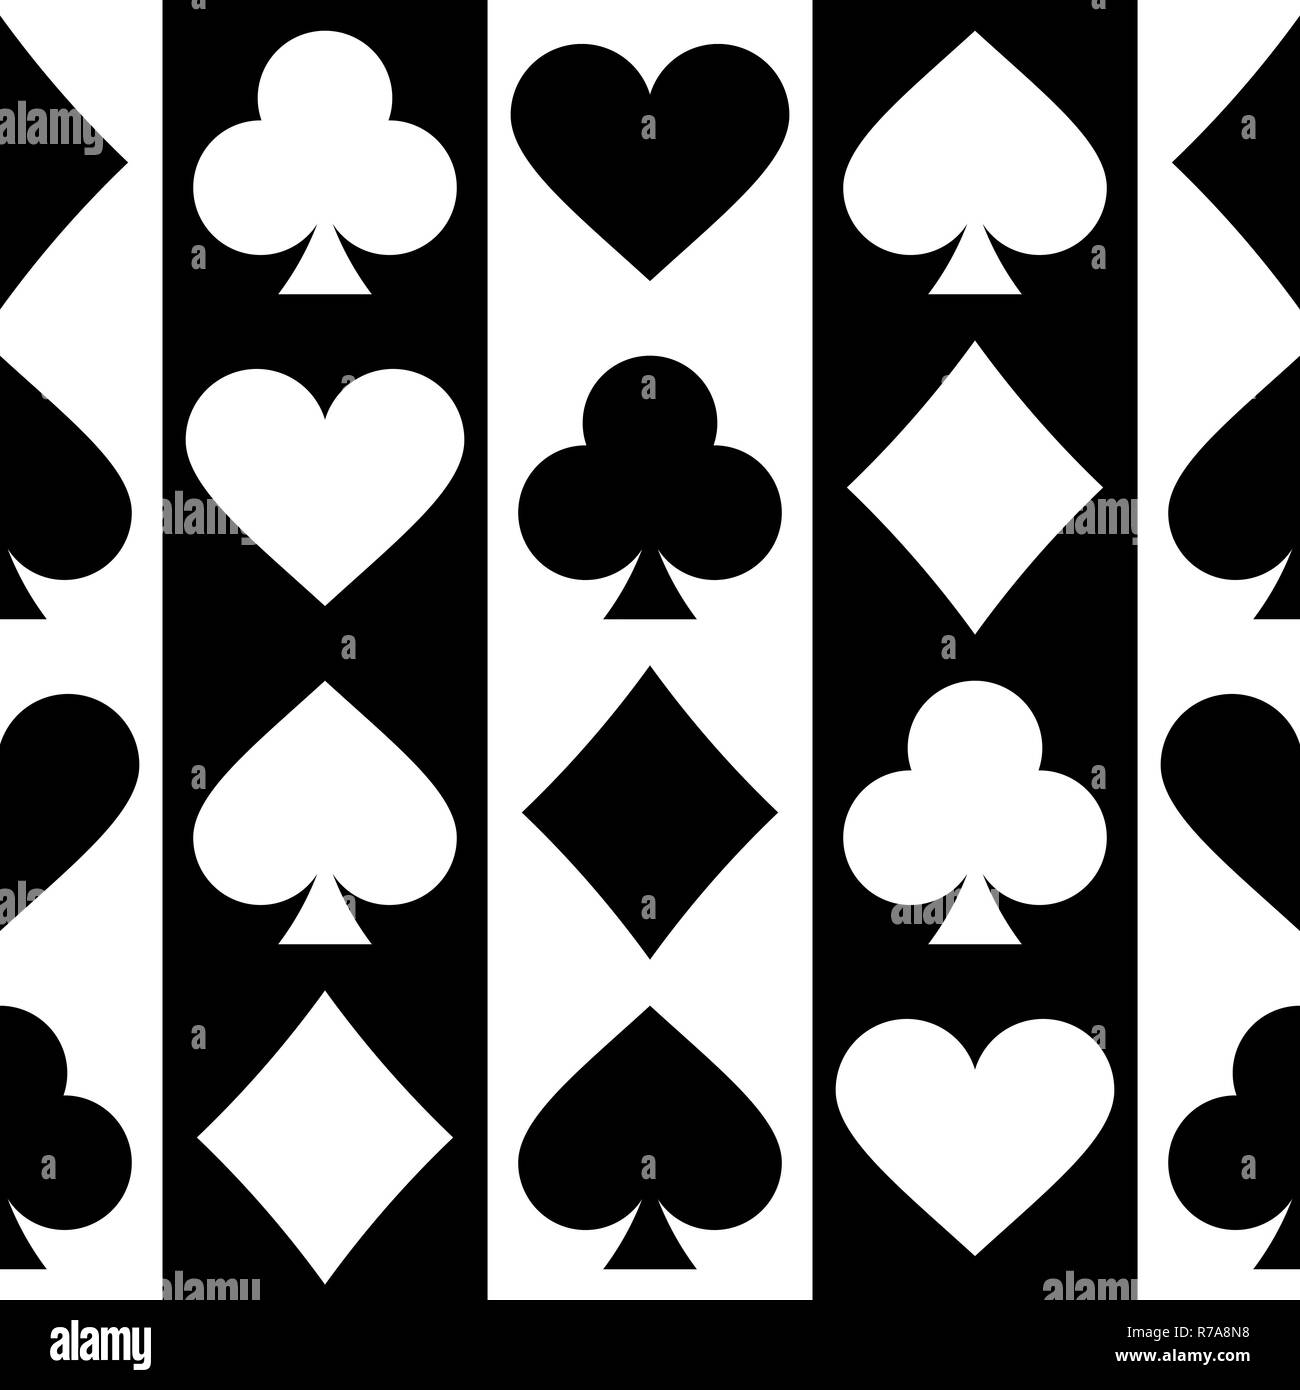 Playing card seamless pattern Stock Photo